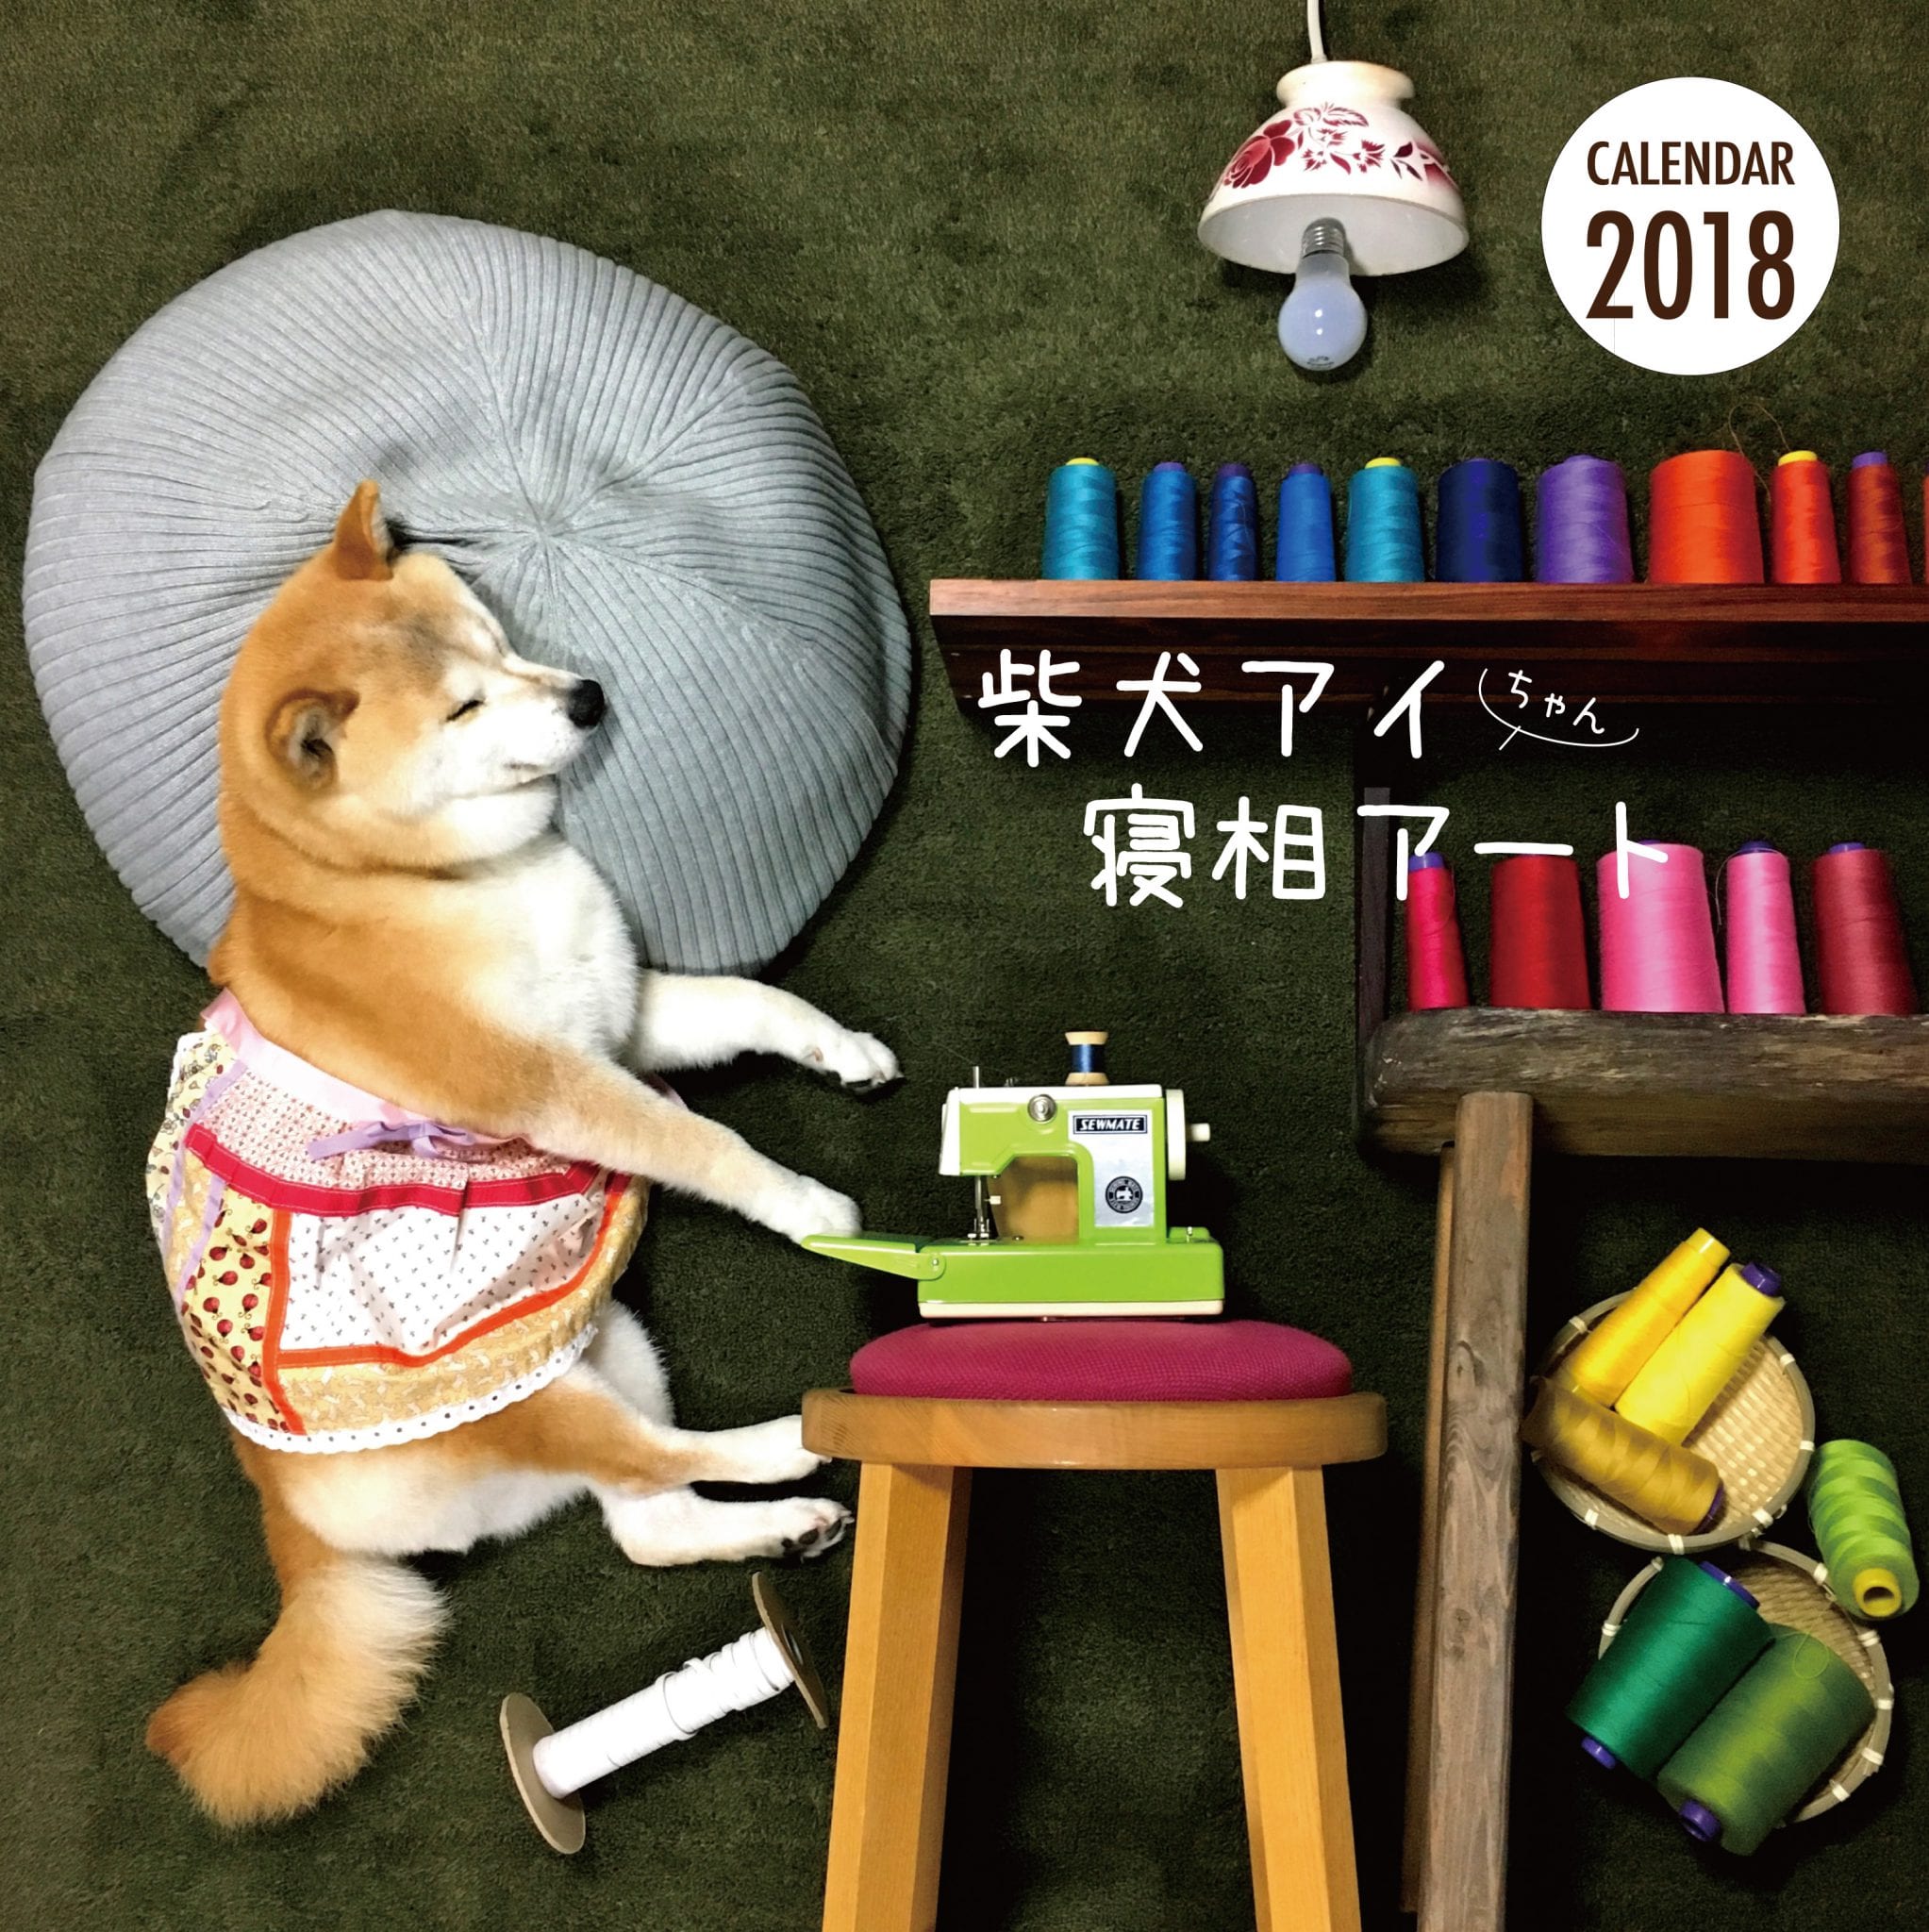 柴犬アイちゃんの寝相アートカレンダー18 芸文社カタログサイト